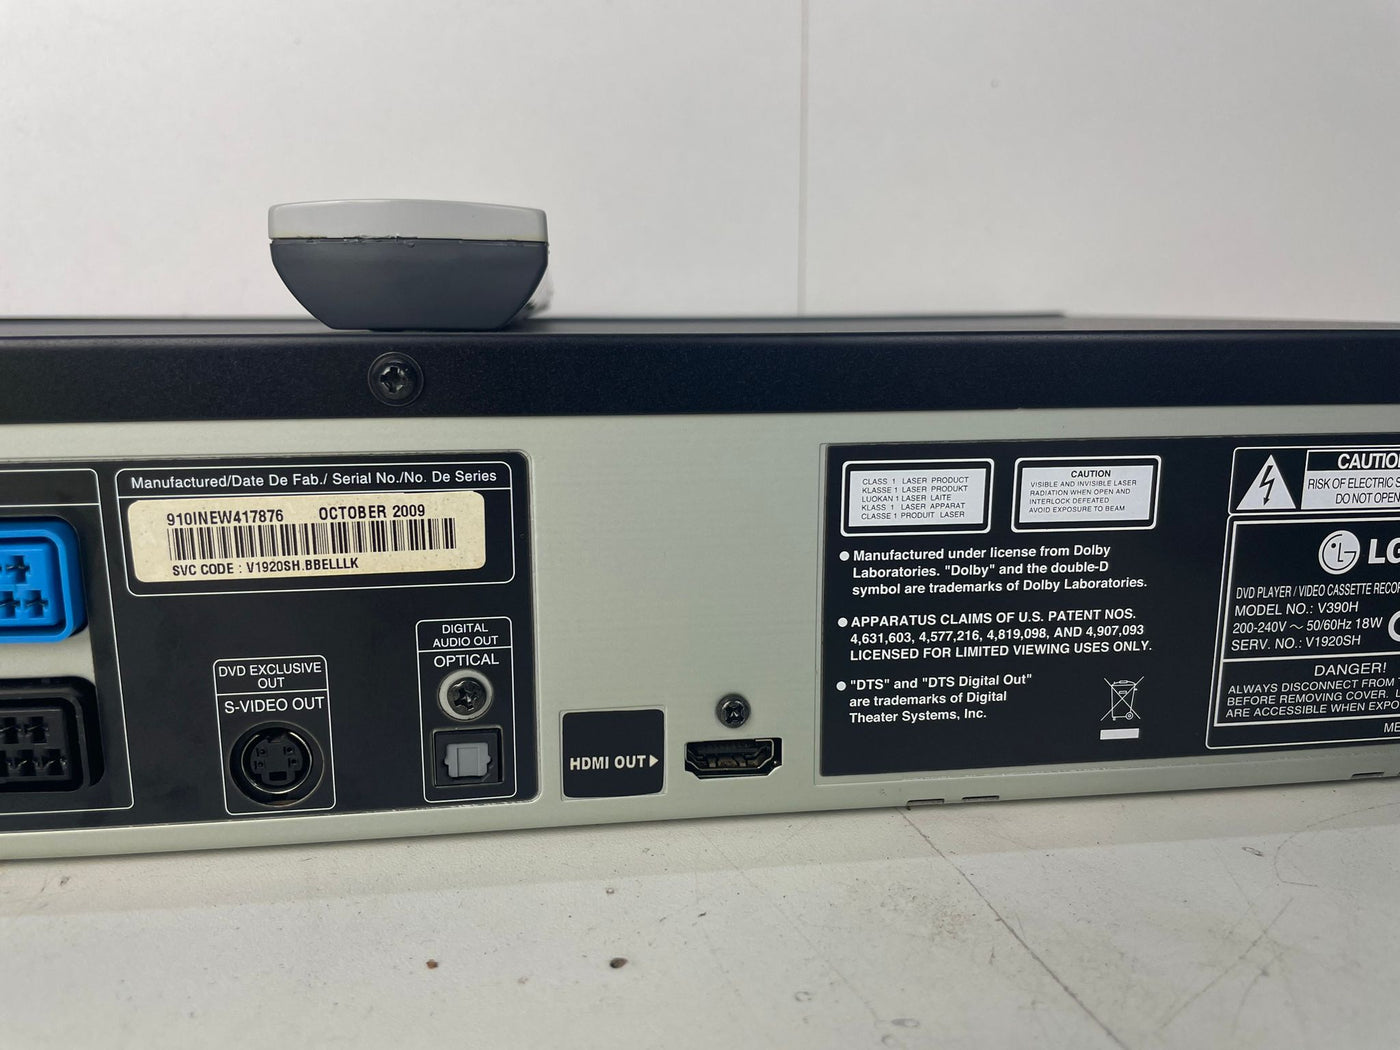 LG V390H DVD & VCR-recorder met HDMI, DivX, MP3 en Simplink | Video Recorder VHS with remote